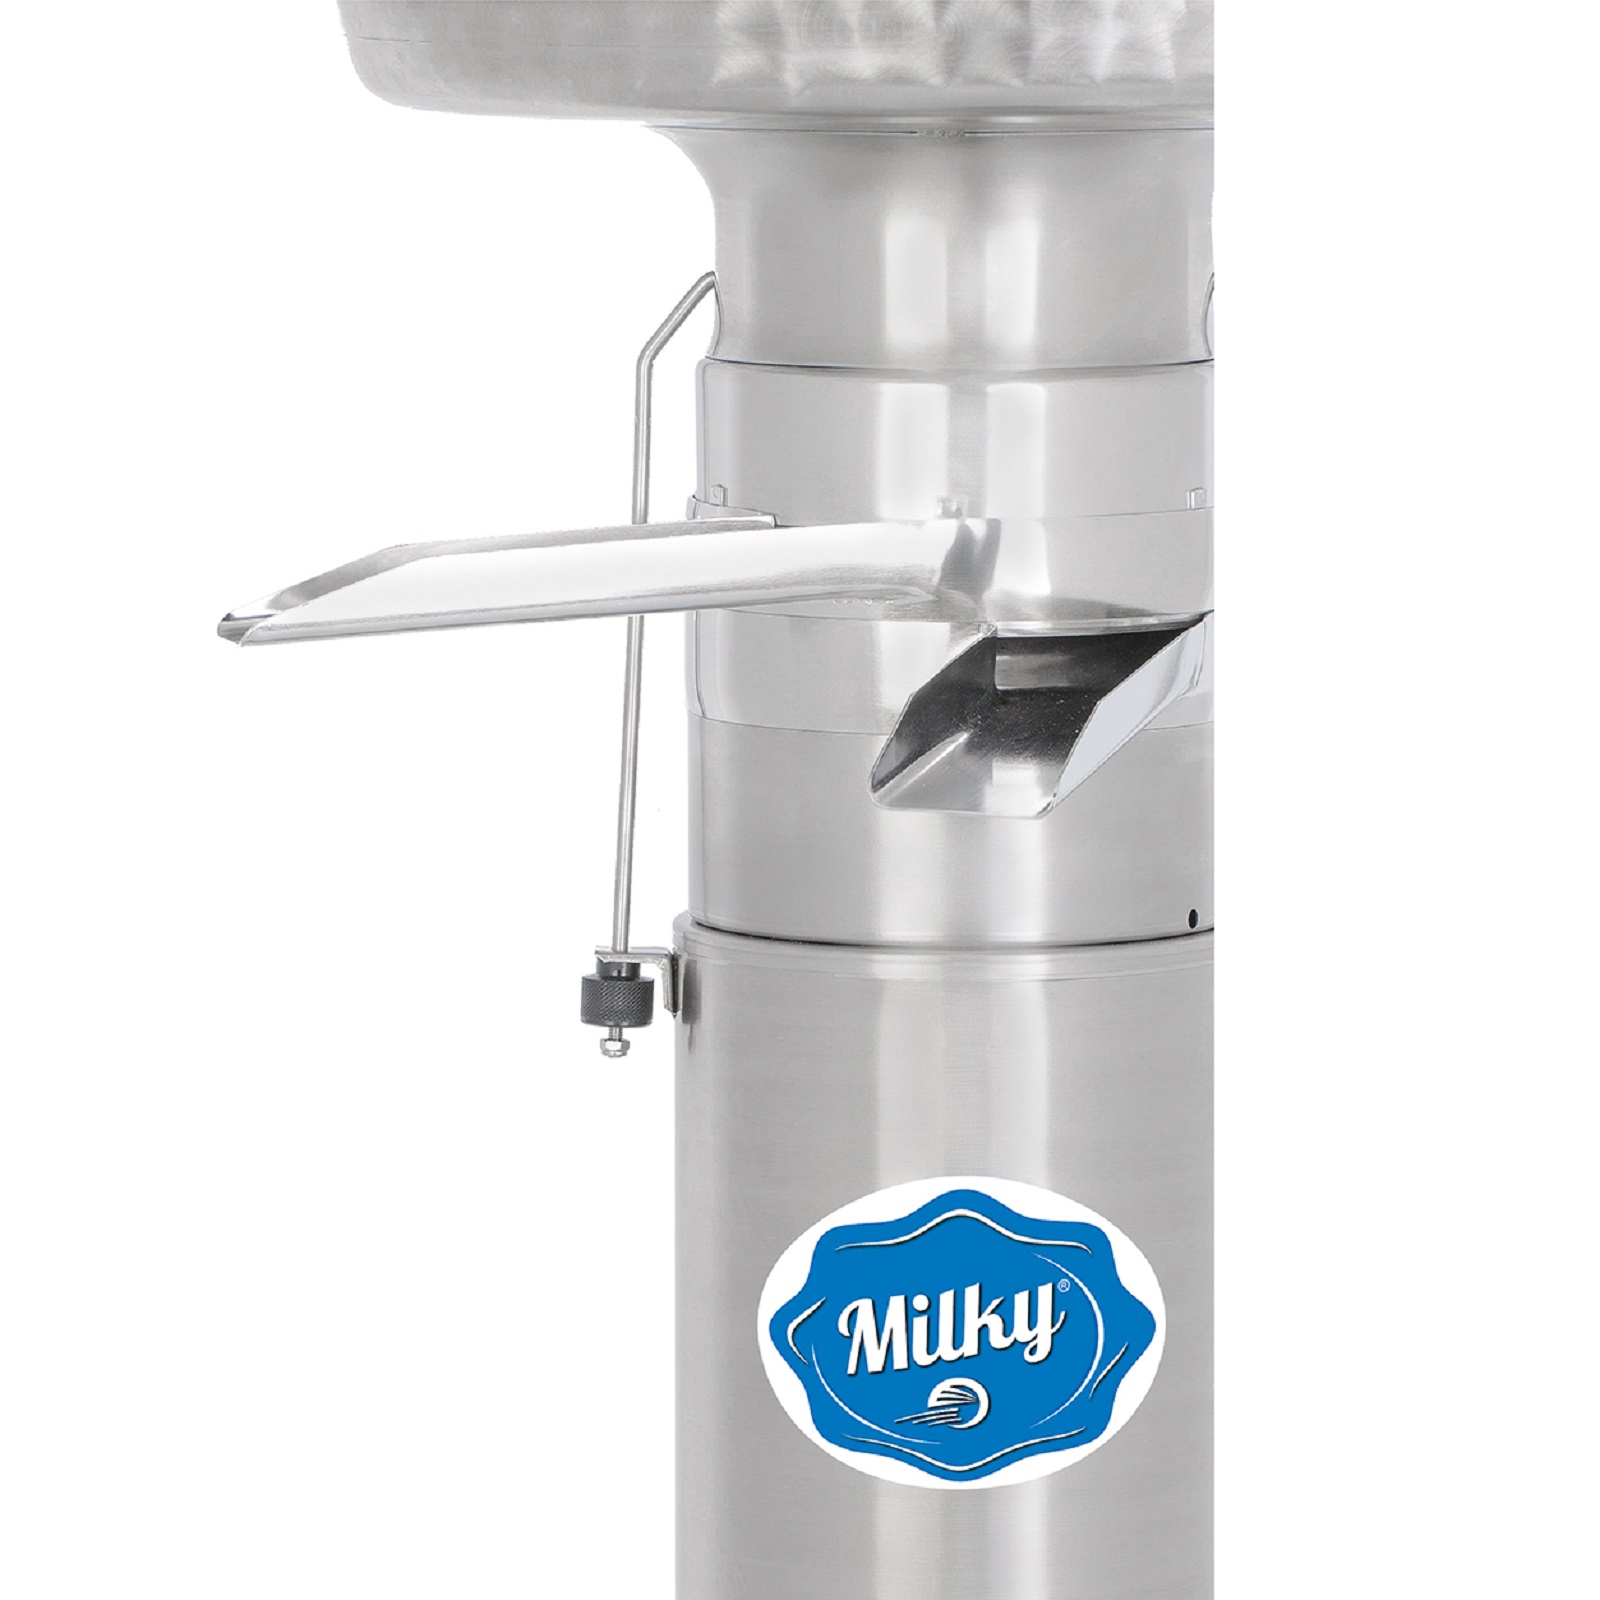 Milky centrifugă de lapte FJ 600 EAR Longlife